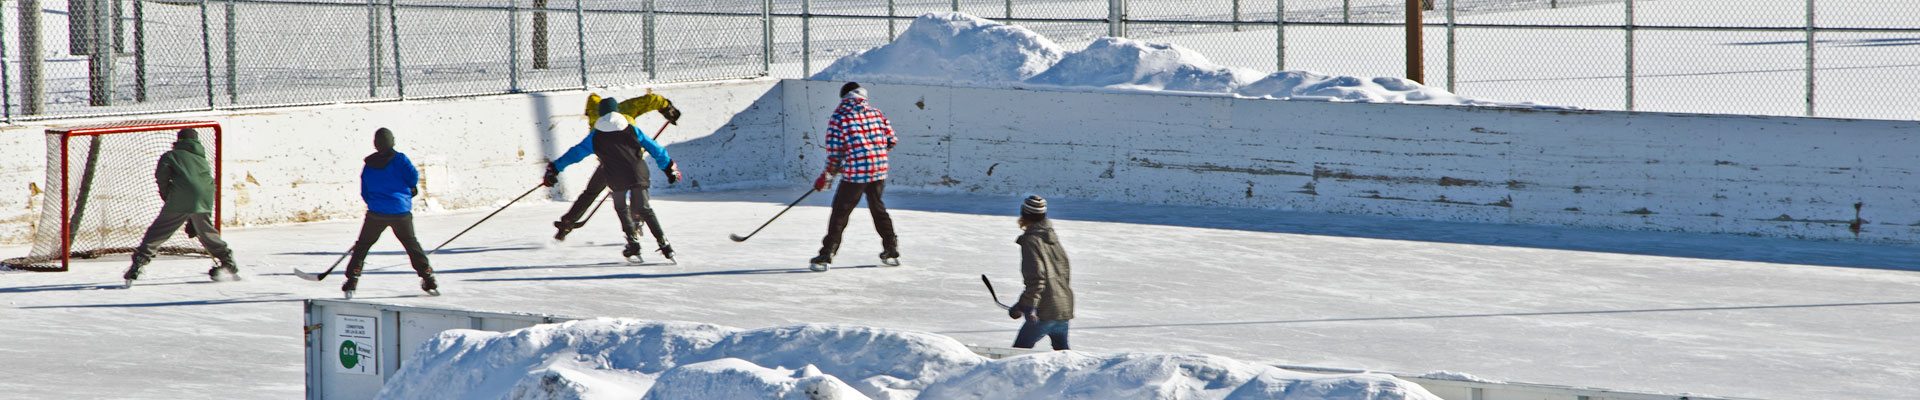 Photo d'une patinoire extérieure avec des joueurs de hockey